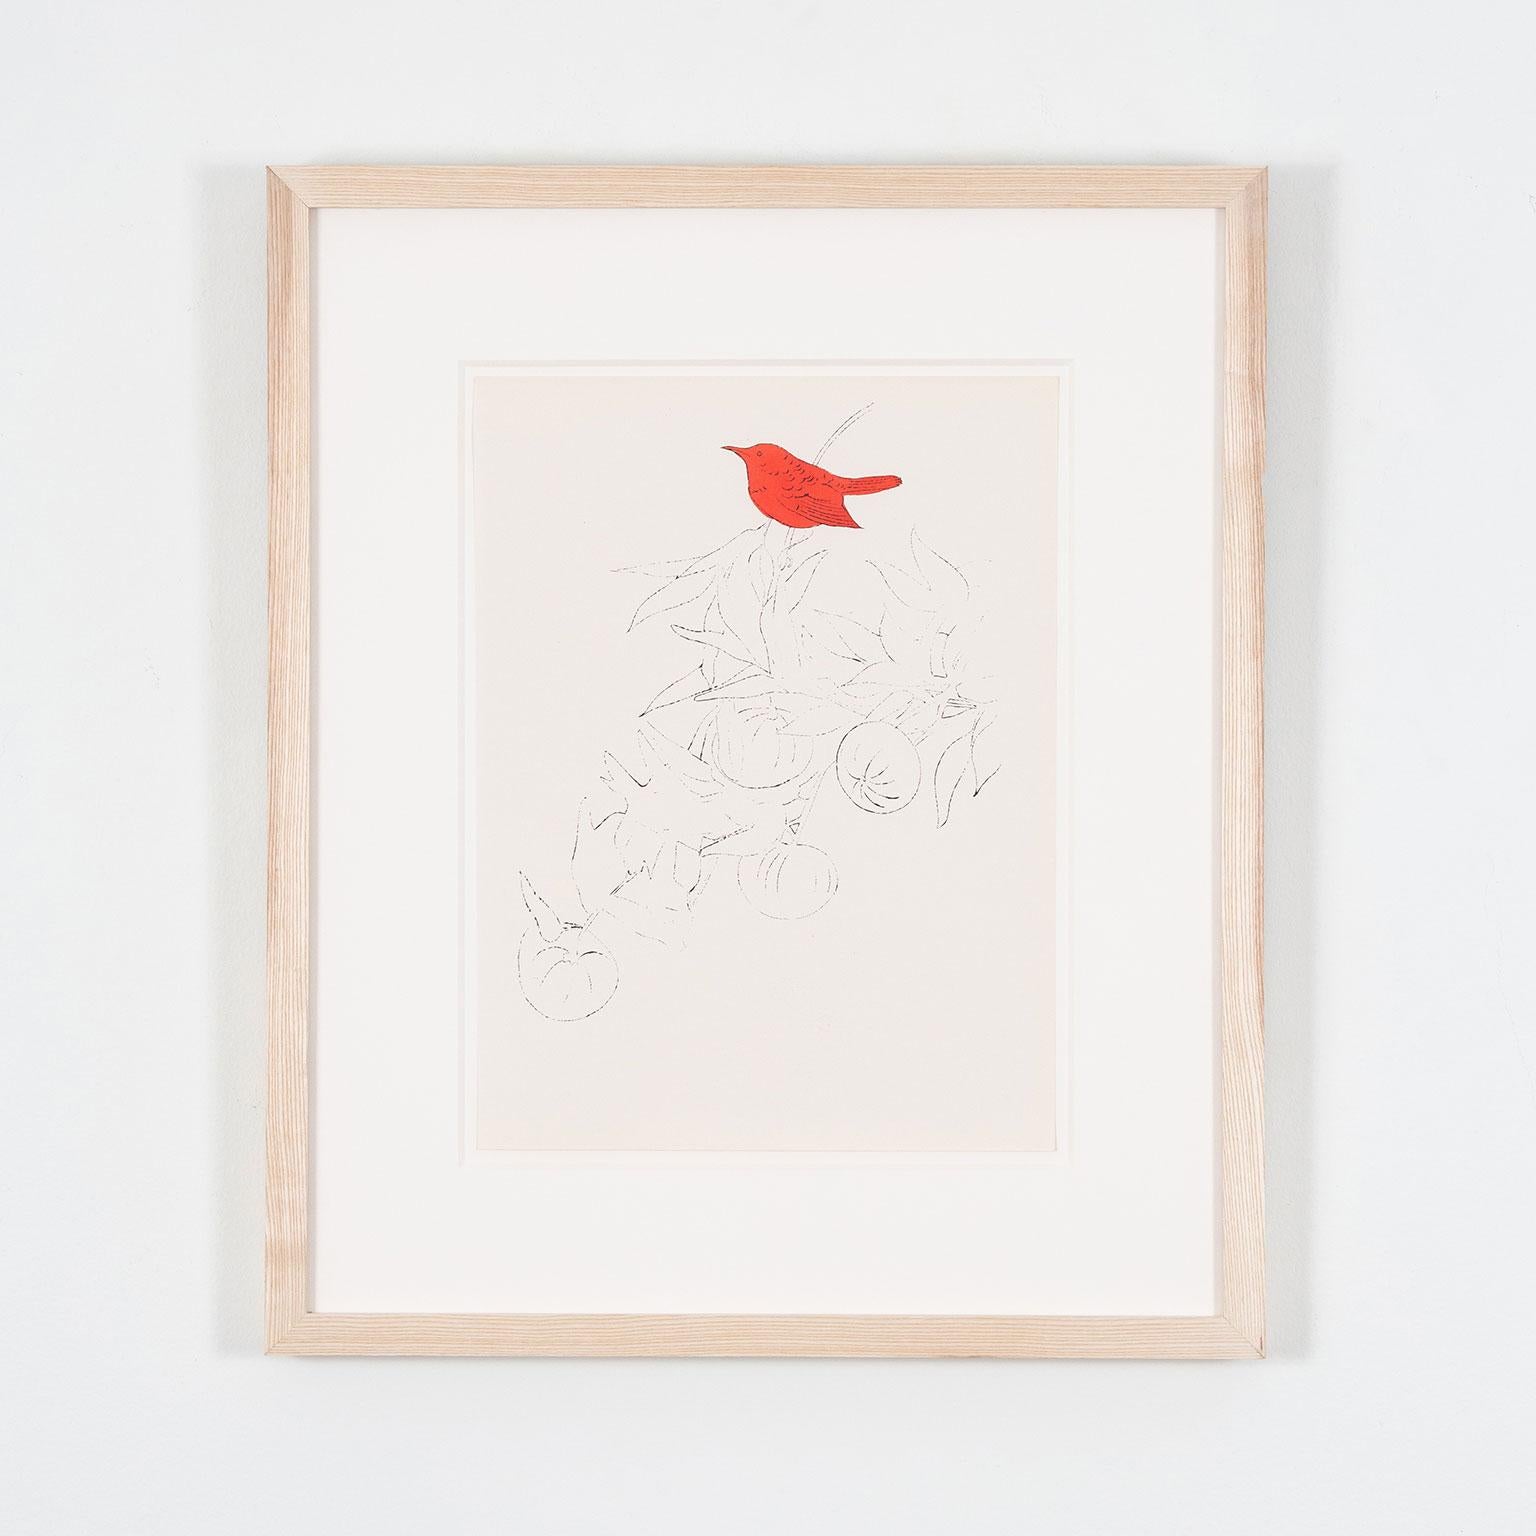 Oiseau sur une branche de fruits, lithographie offset colorée à la main à l'aquarelle - Print de Andy Warhol